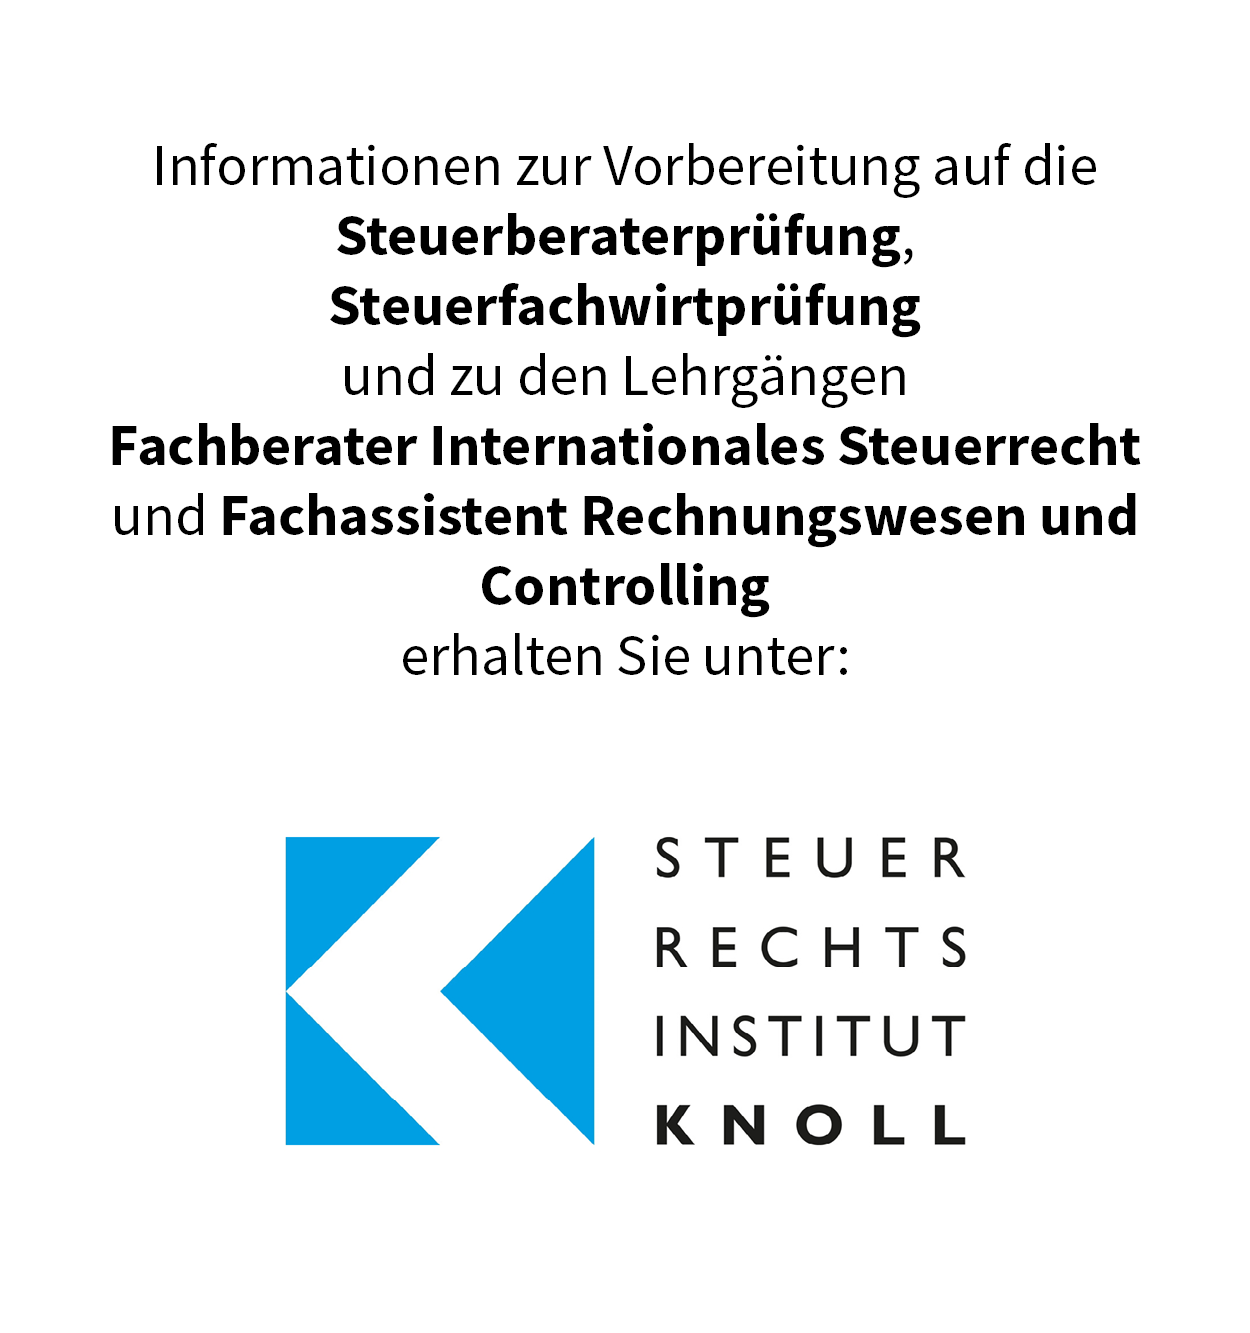 Informationen zur Vorbereitung auf die  Steuerberaterprüfung, Steuerfachwirtprüfung  und zum Lehrgang  Fachberater Internationales Steuerrecht  erhalten Sie unter: www.knoll-steuer.com